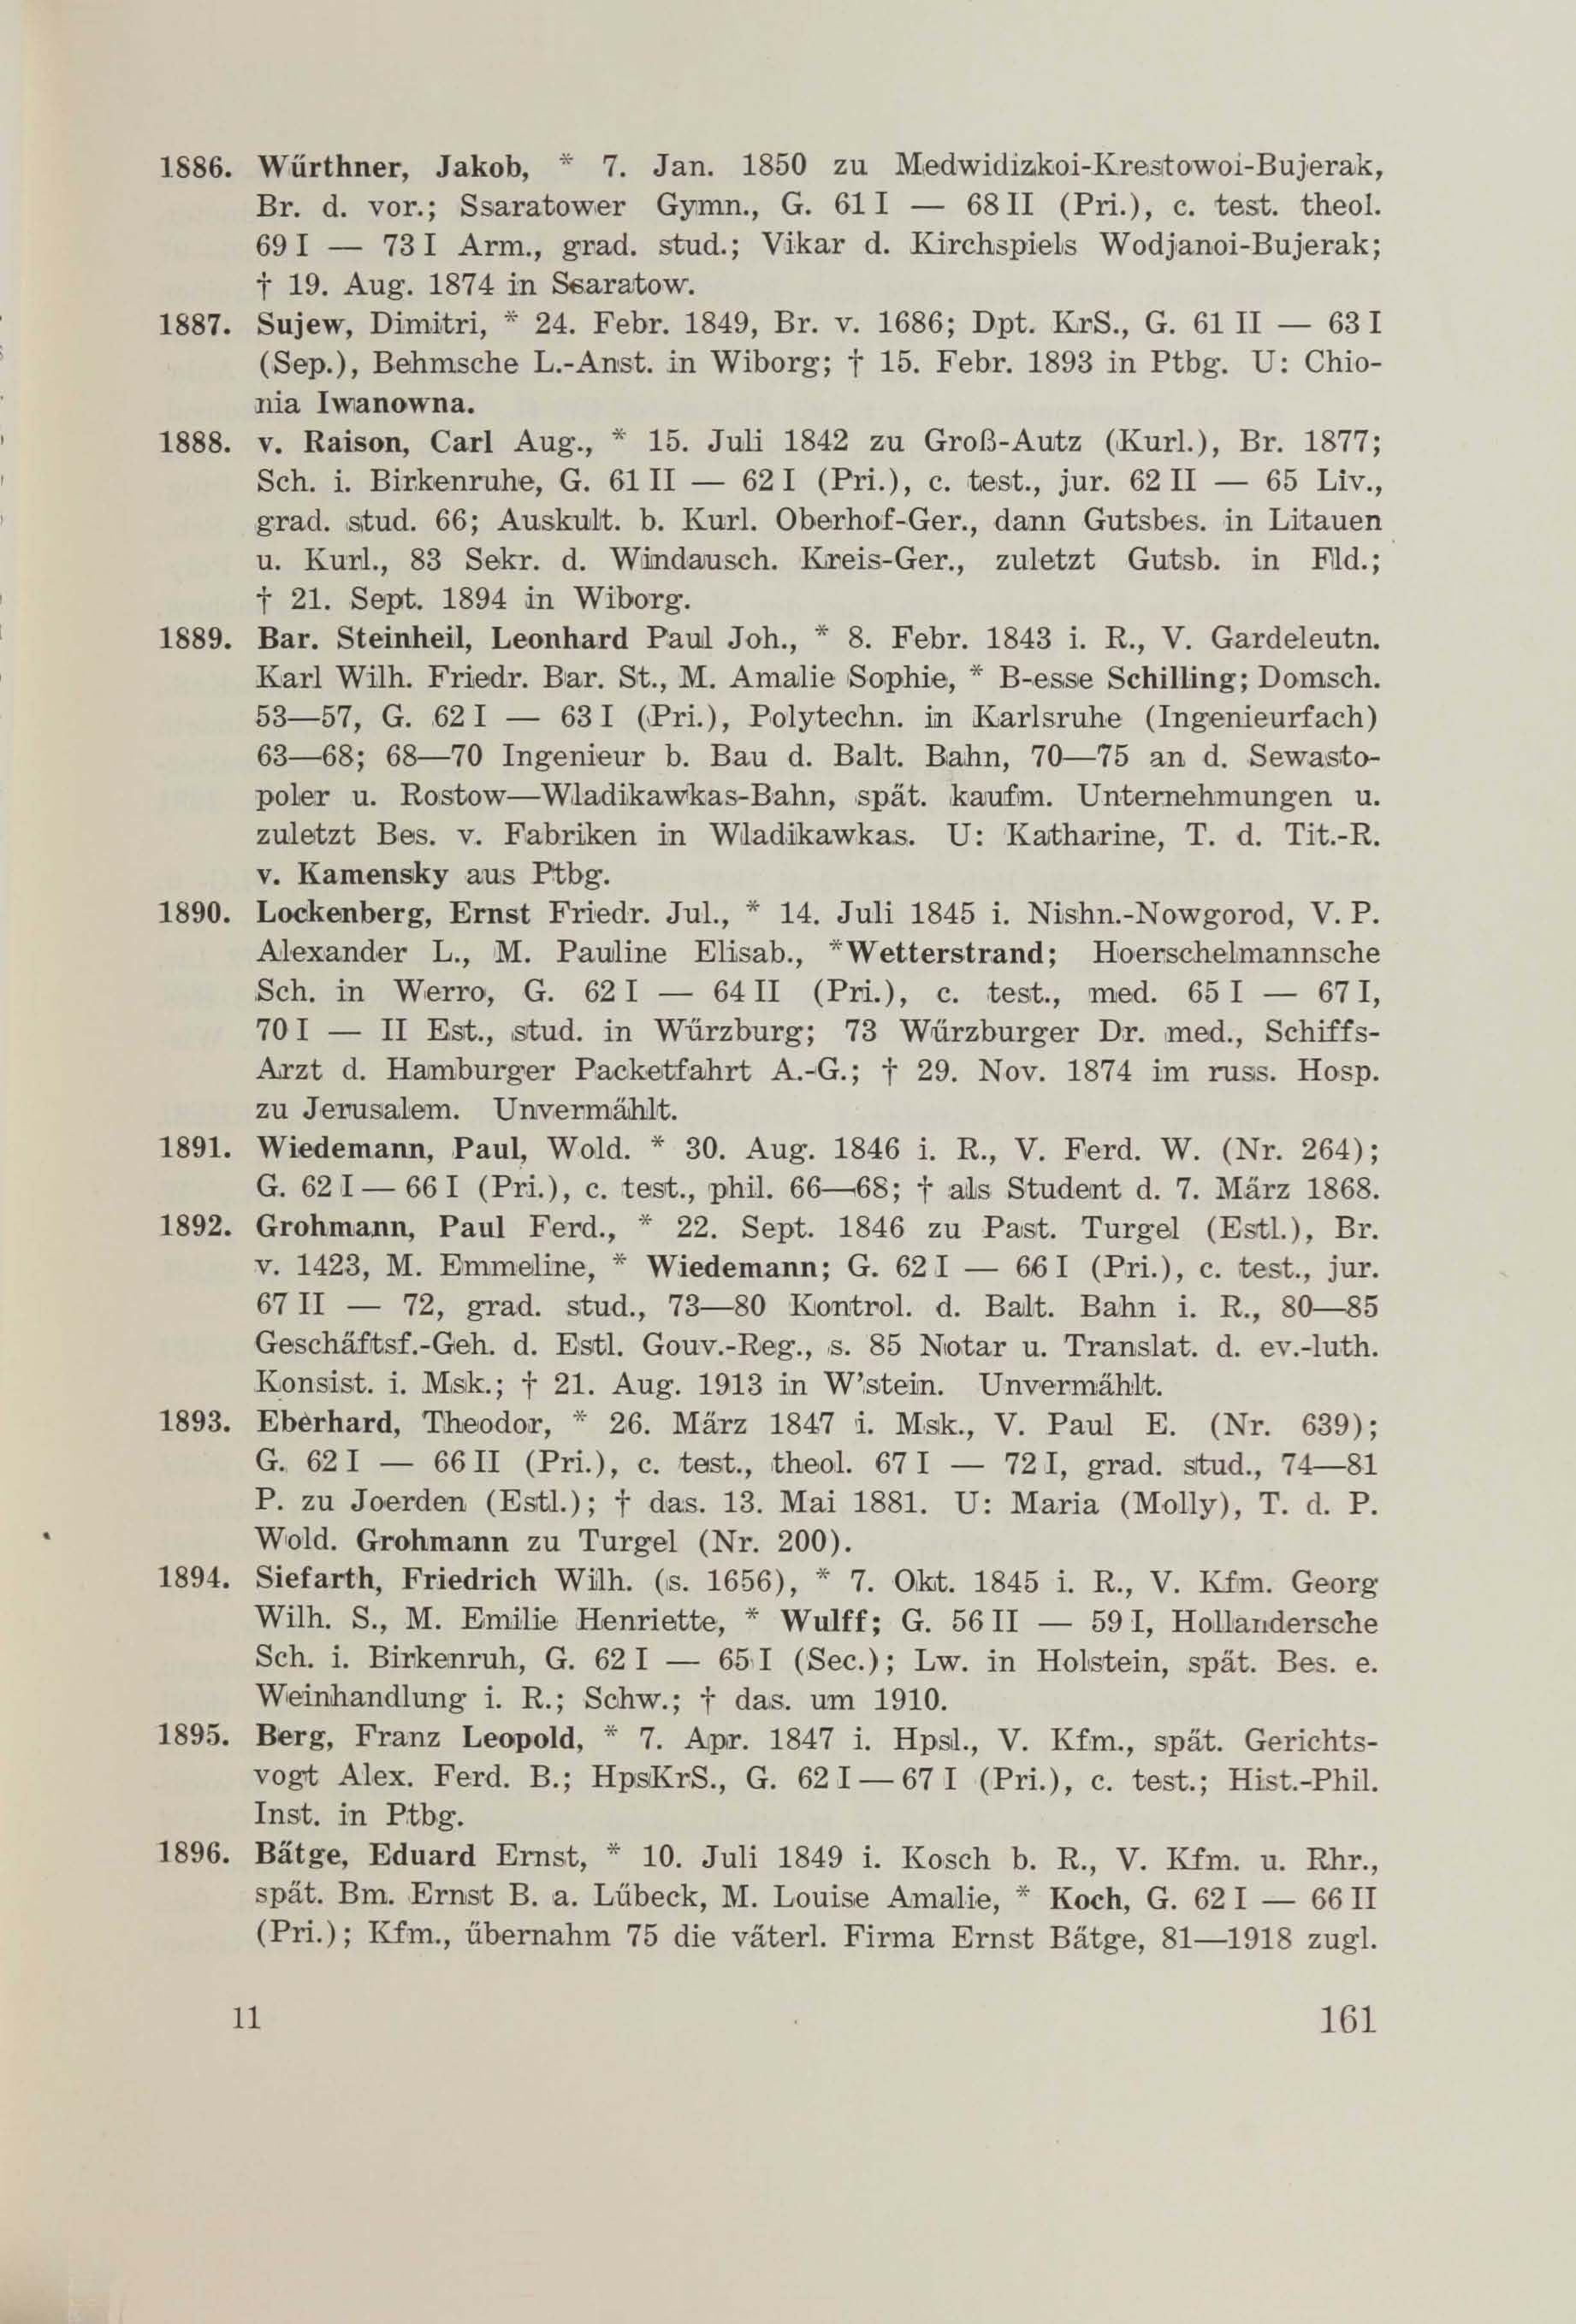 Schüler-Verzeichnis des Revalschen Gouvernements-Gymnasiums 1805–1890 (1931) | 171. (161) Main body of text